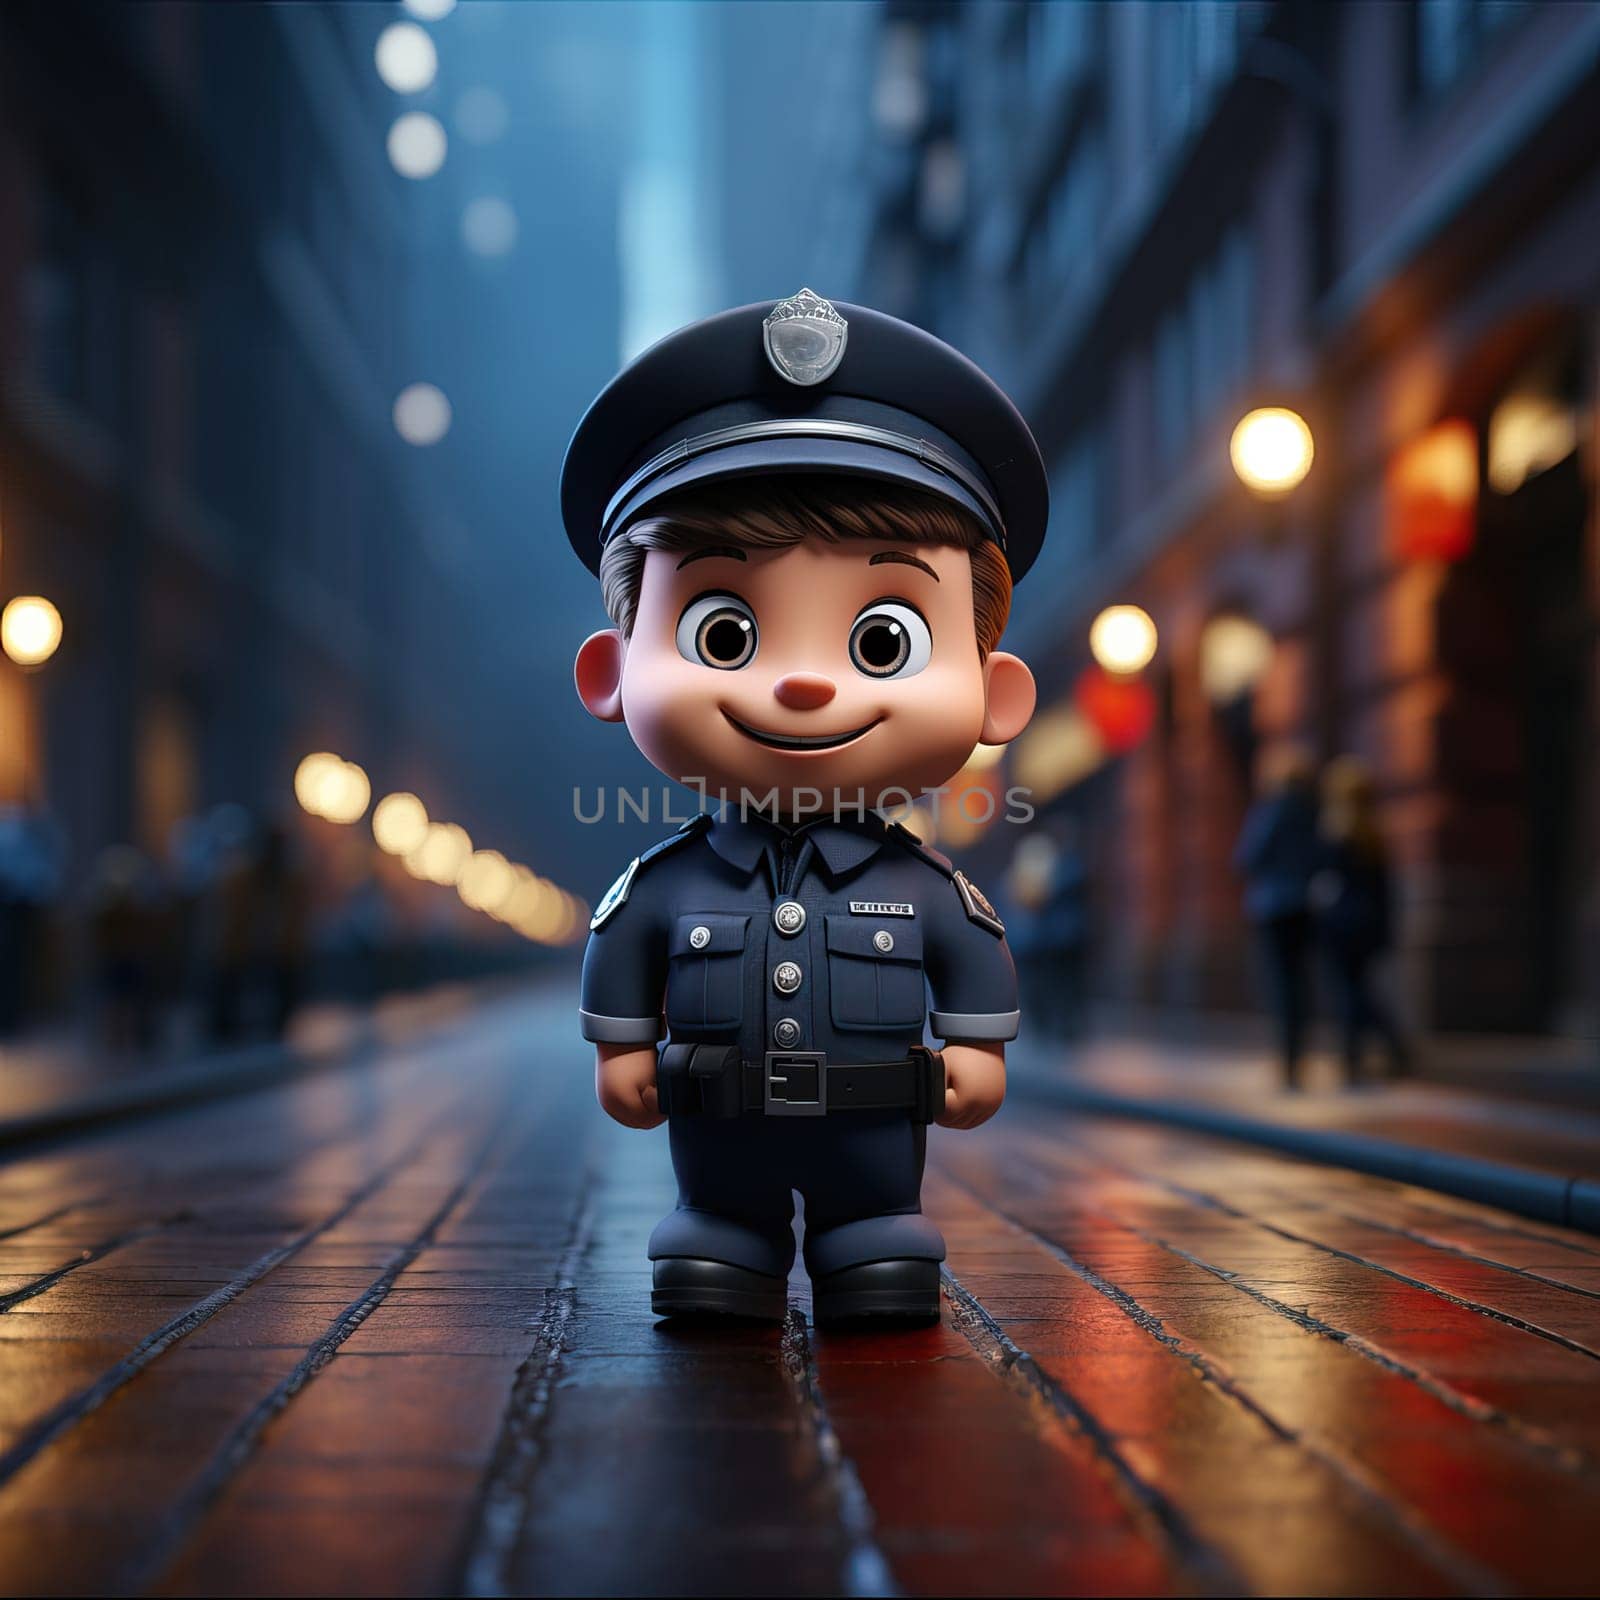 Cute 3D cartoon policeman on a city street. by Fischeron